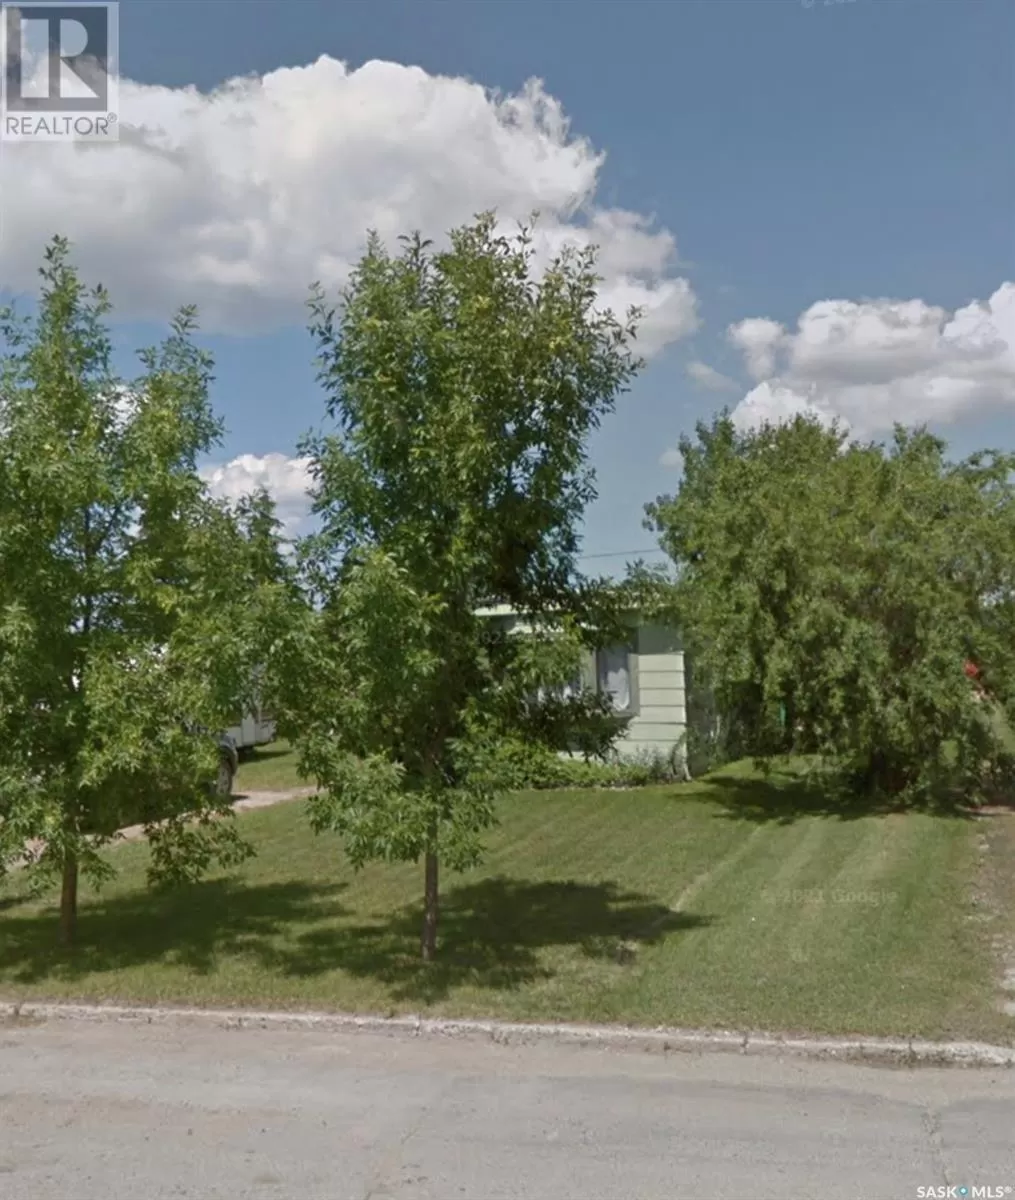 Mobile Home for rent: 202 Main Street, Kipling, Saskatchewan S0G 2S0